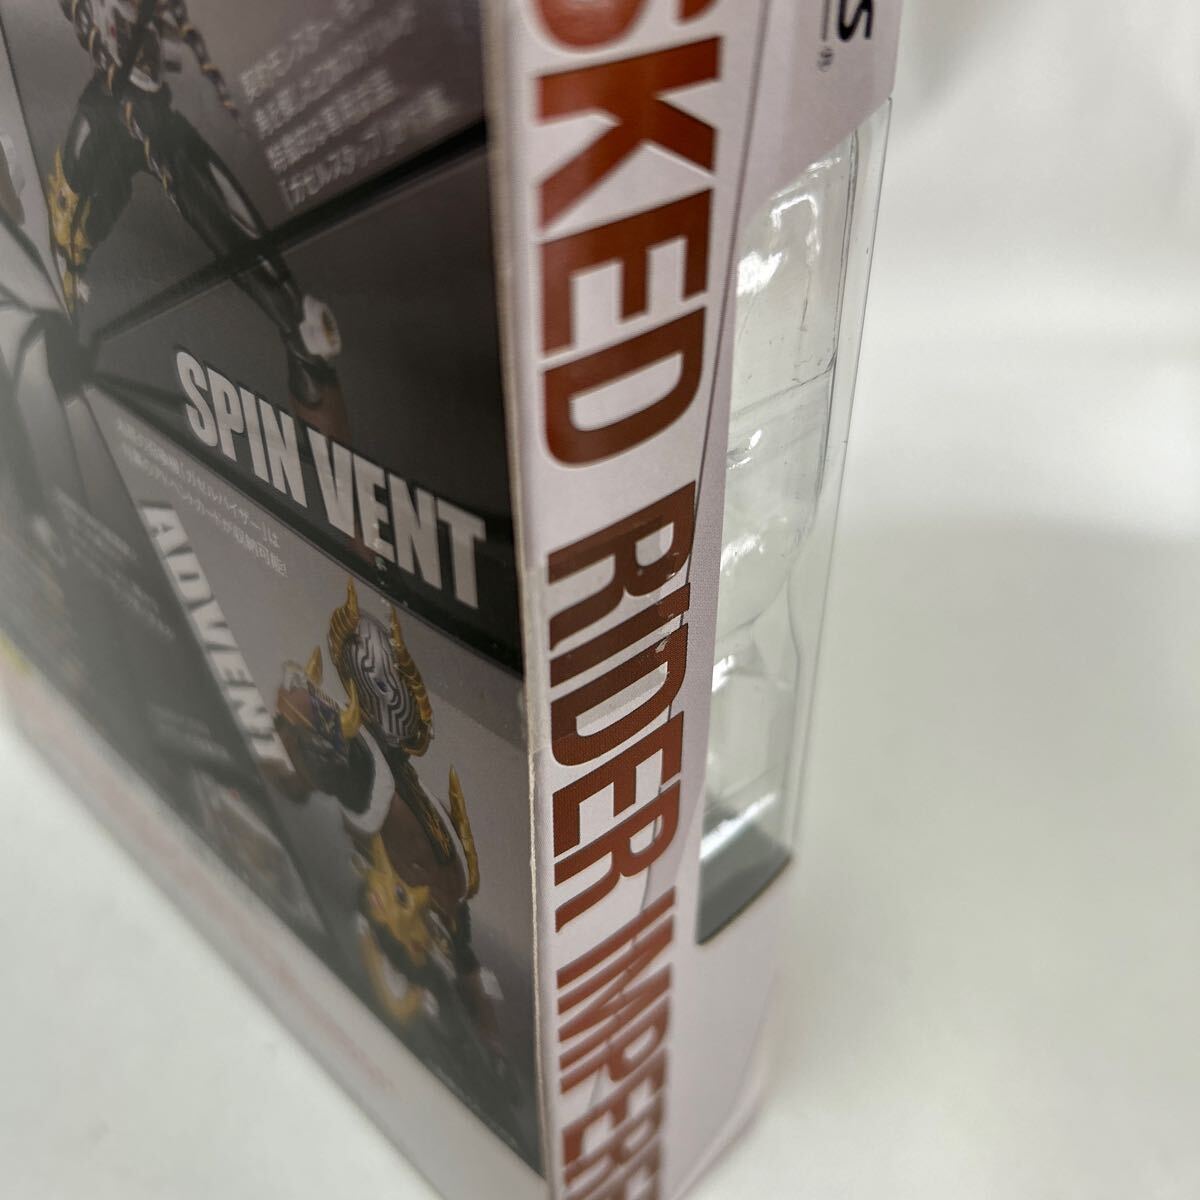  Bandai душа web магазин ограничение S.H.Figuarts [ Kamen Rider Dragon Knight ] Kamen Rider импеллер нераспечатанный перевозка коробка есть 